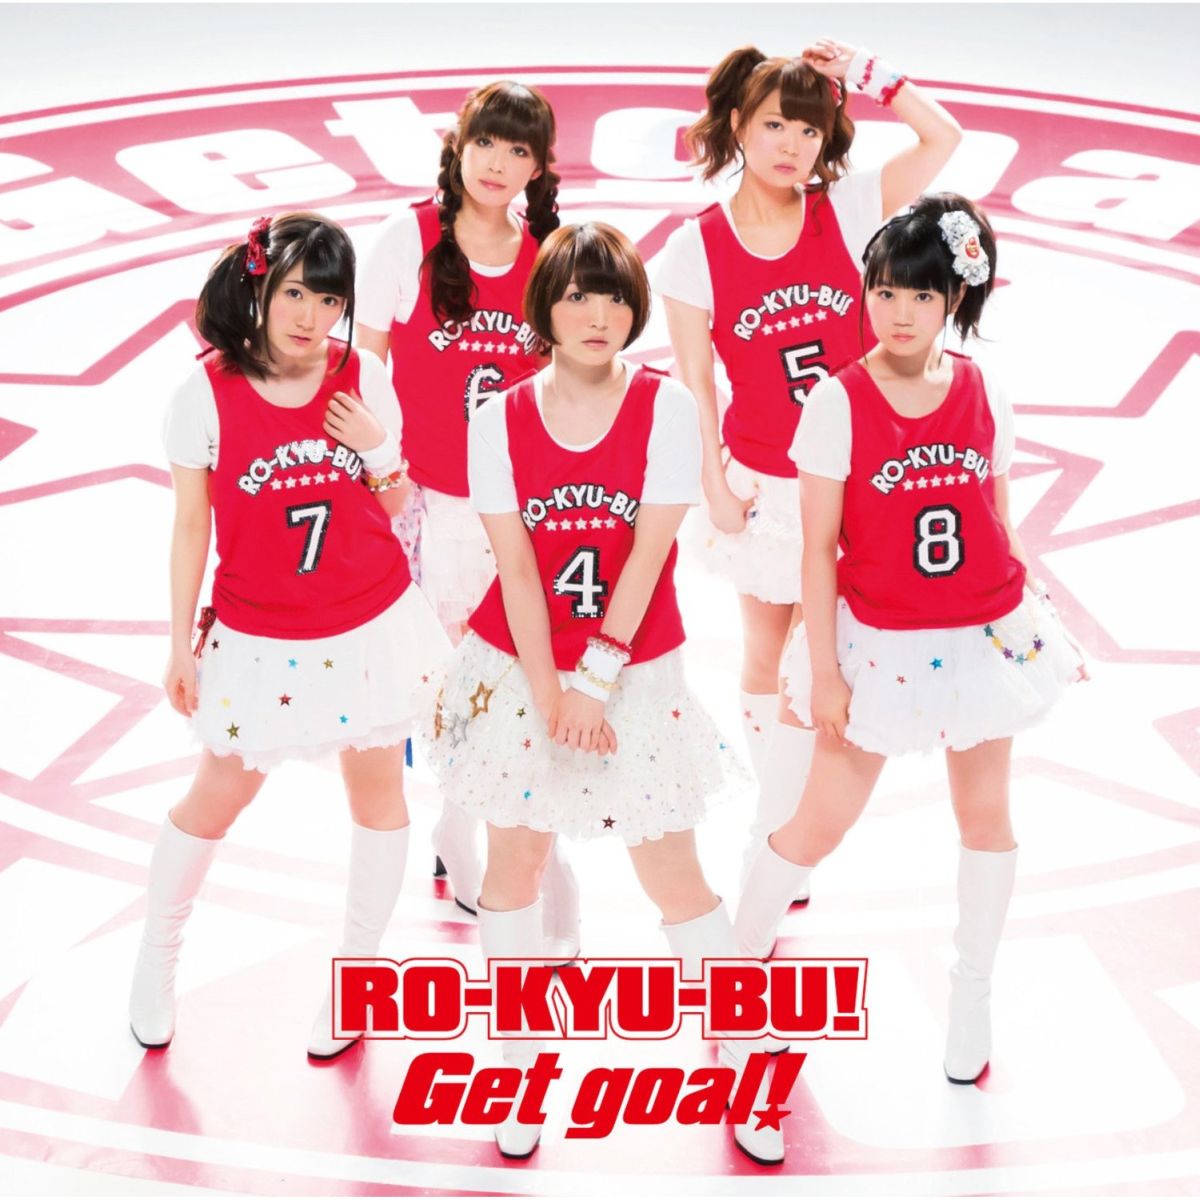 TVアニメ「ロウきゅーぶ!SS」オープニング/エンディングテーマ::Get goal!画像